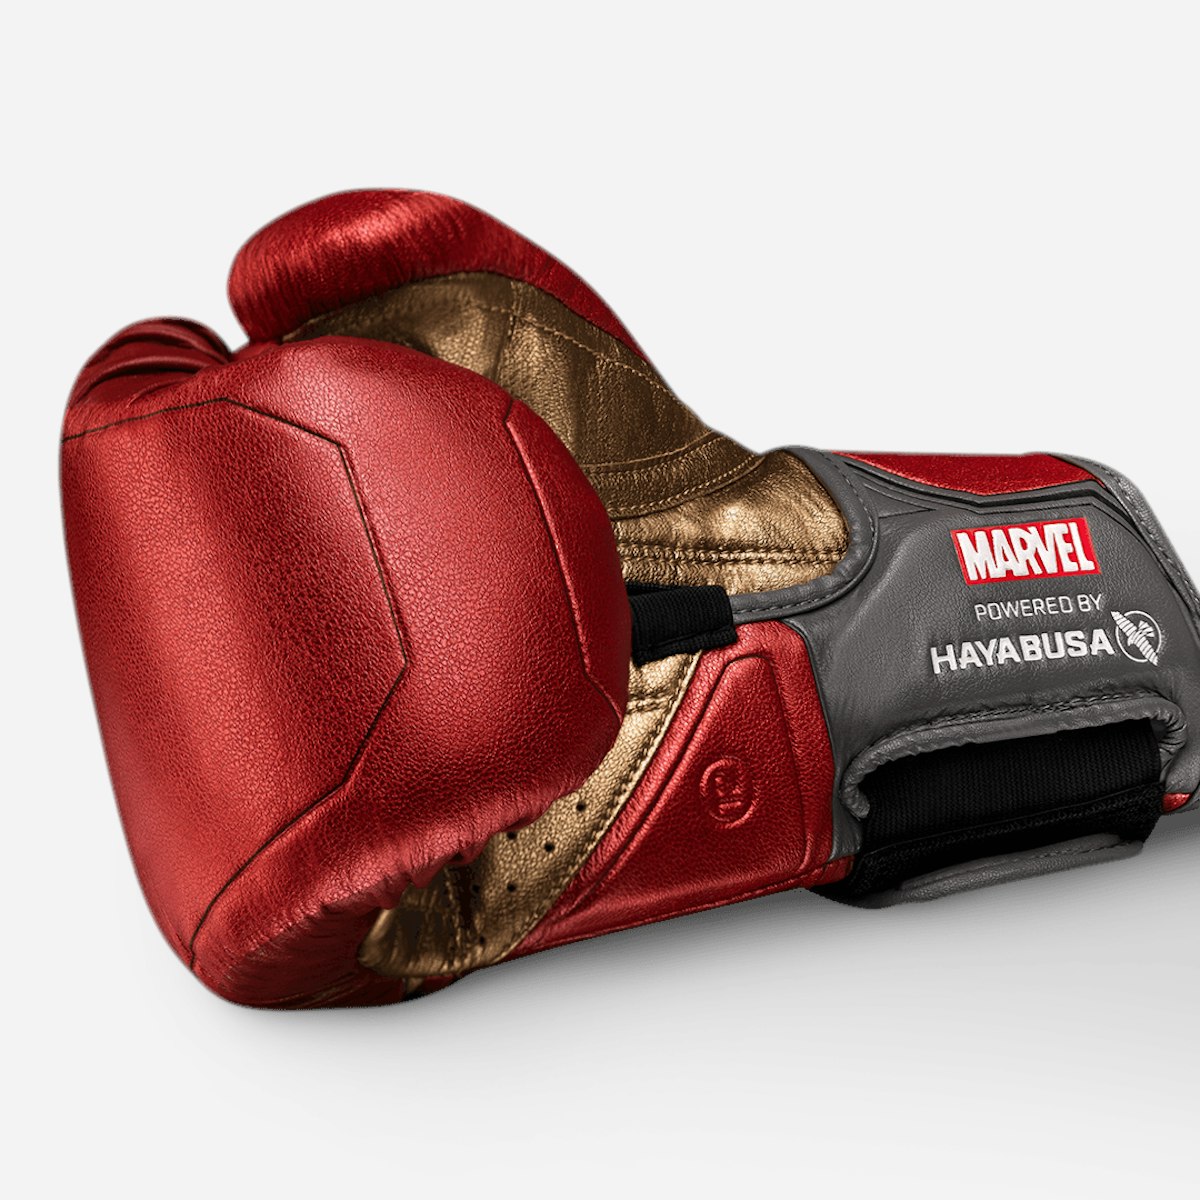 MARVEL® Hero Elite Series: Iron Man Boxing Gloves by Hayabusa